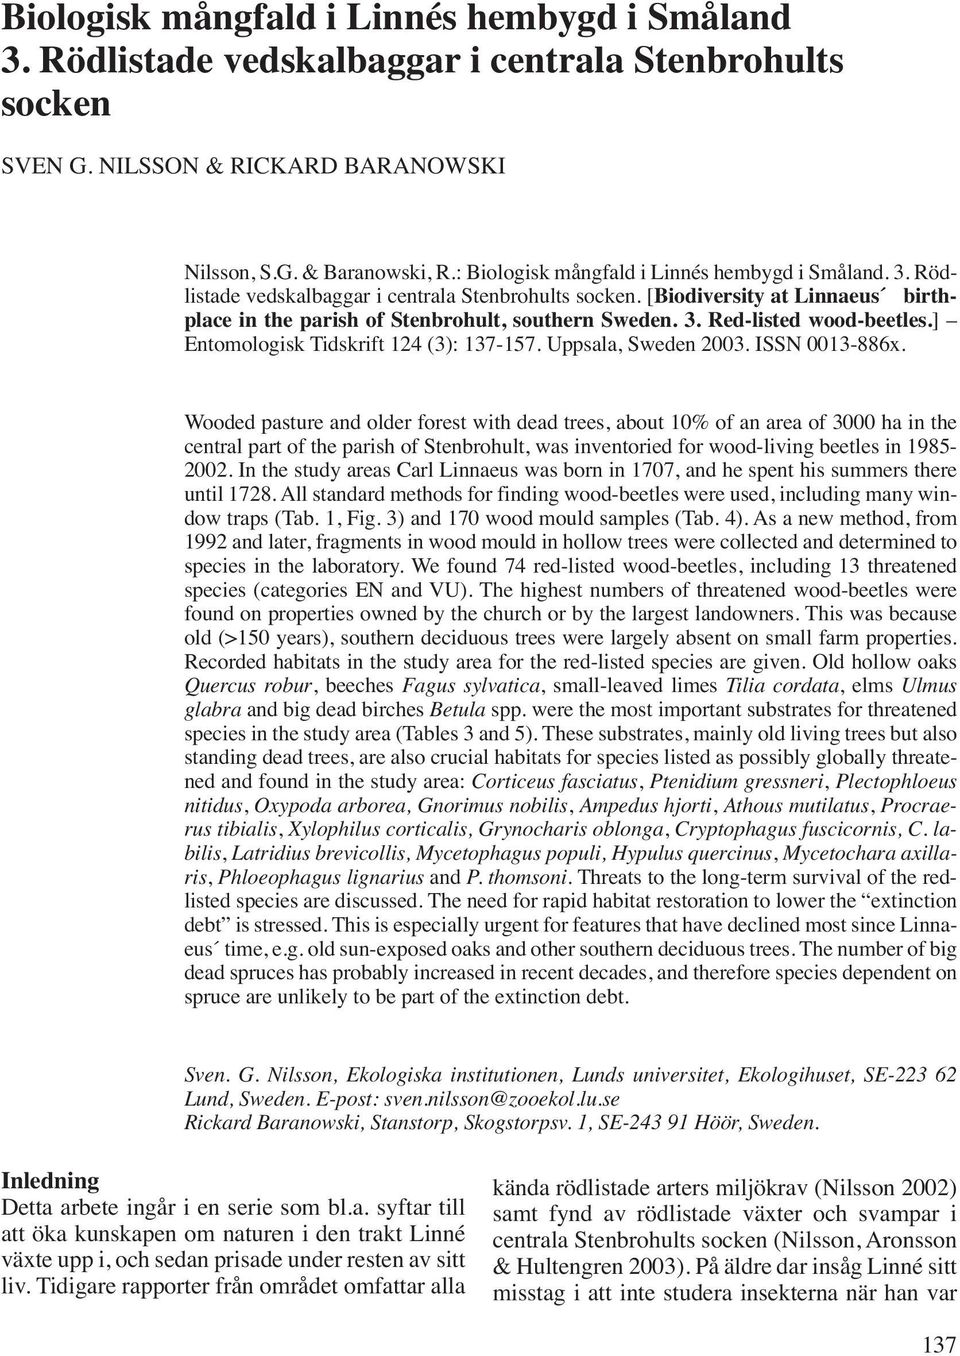 ] Entomologisk Tidskrift 124 (3): 137-157. Uppsala, Sweden 2003. ISSN 0013-886x.